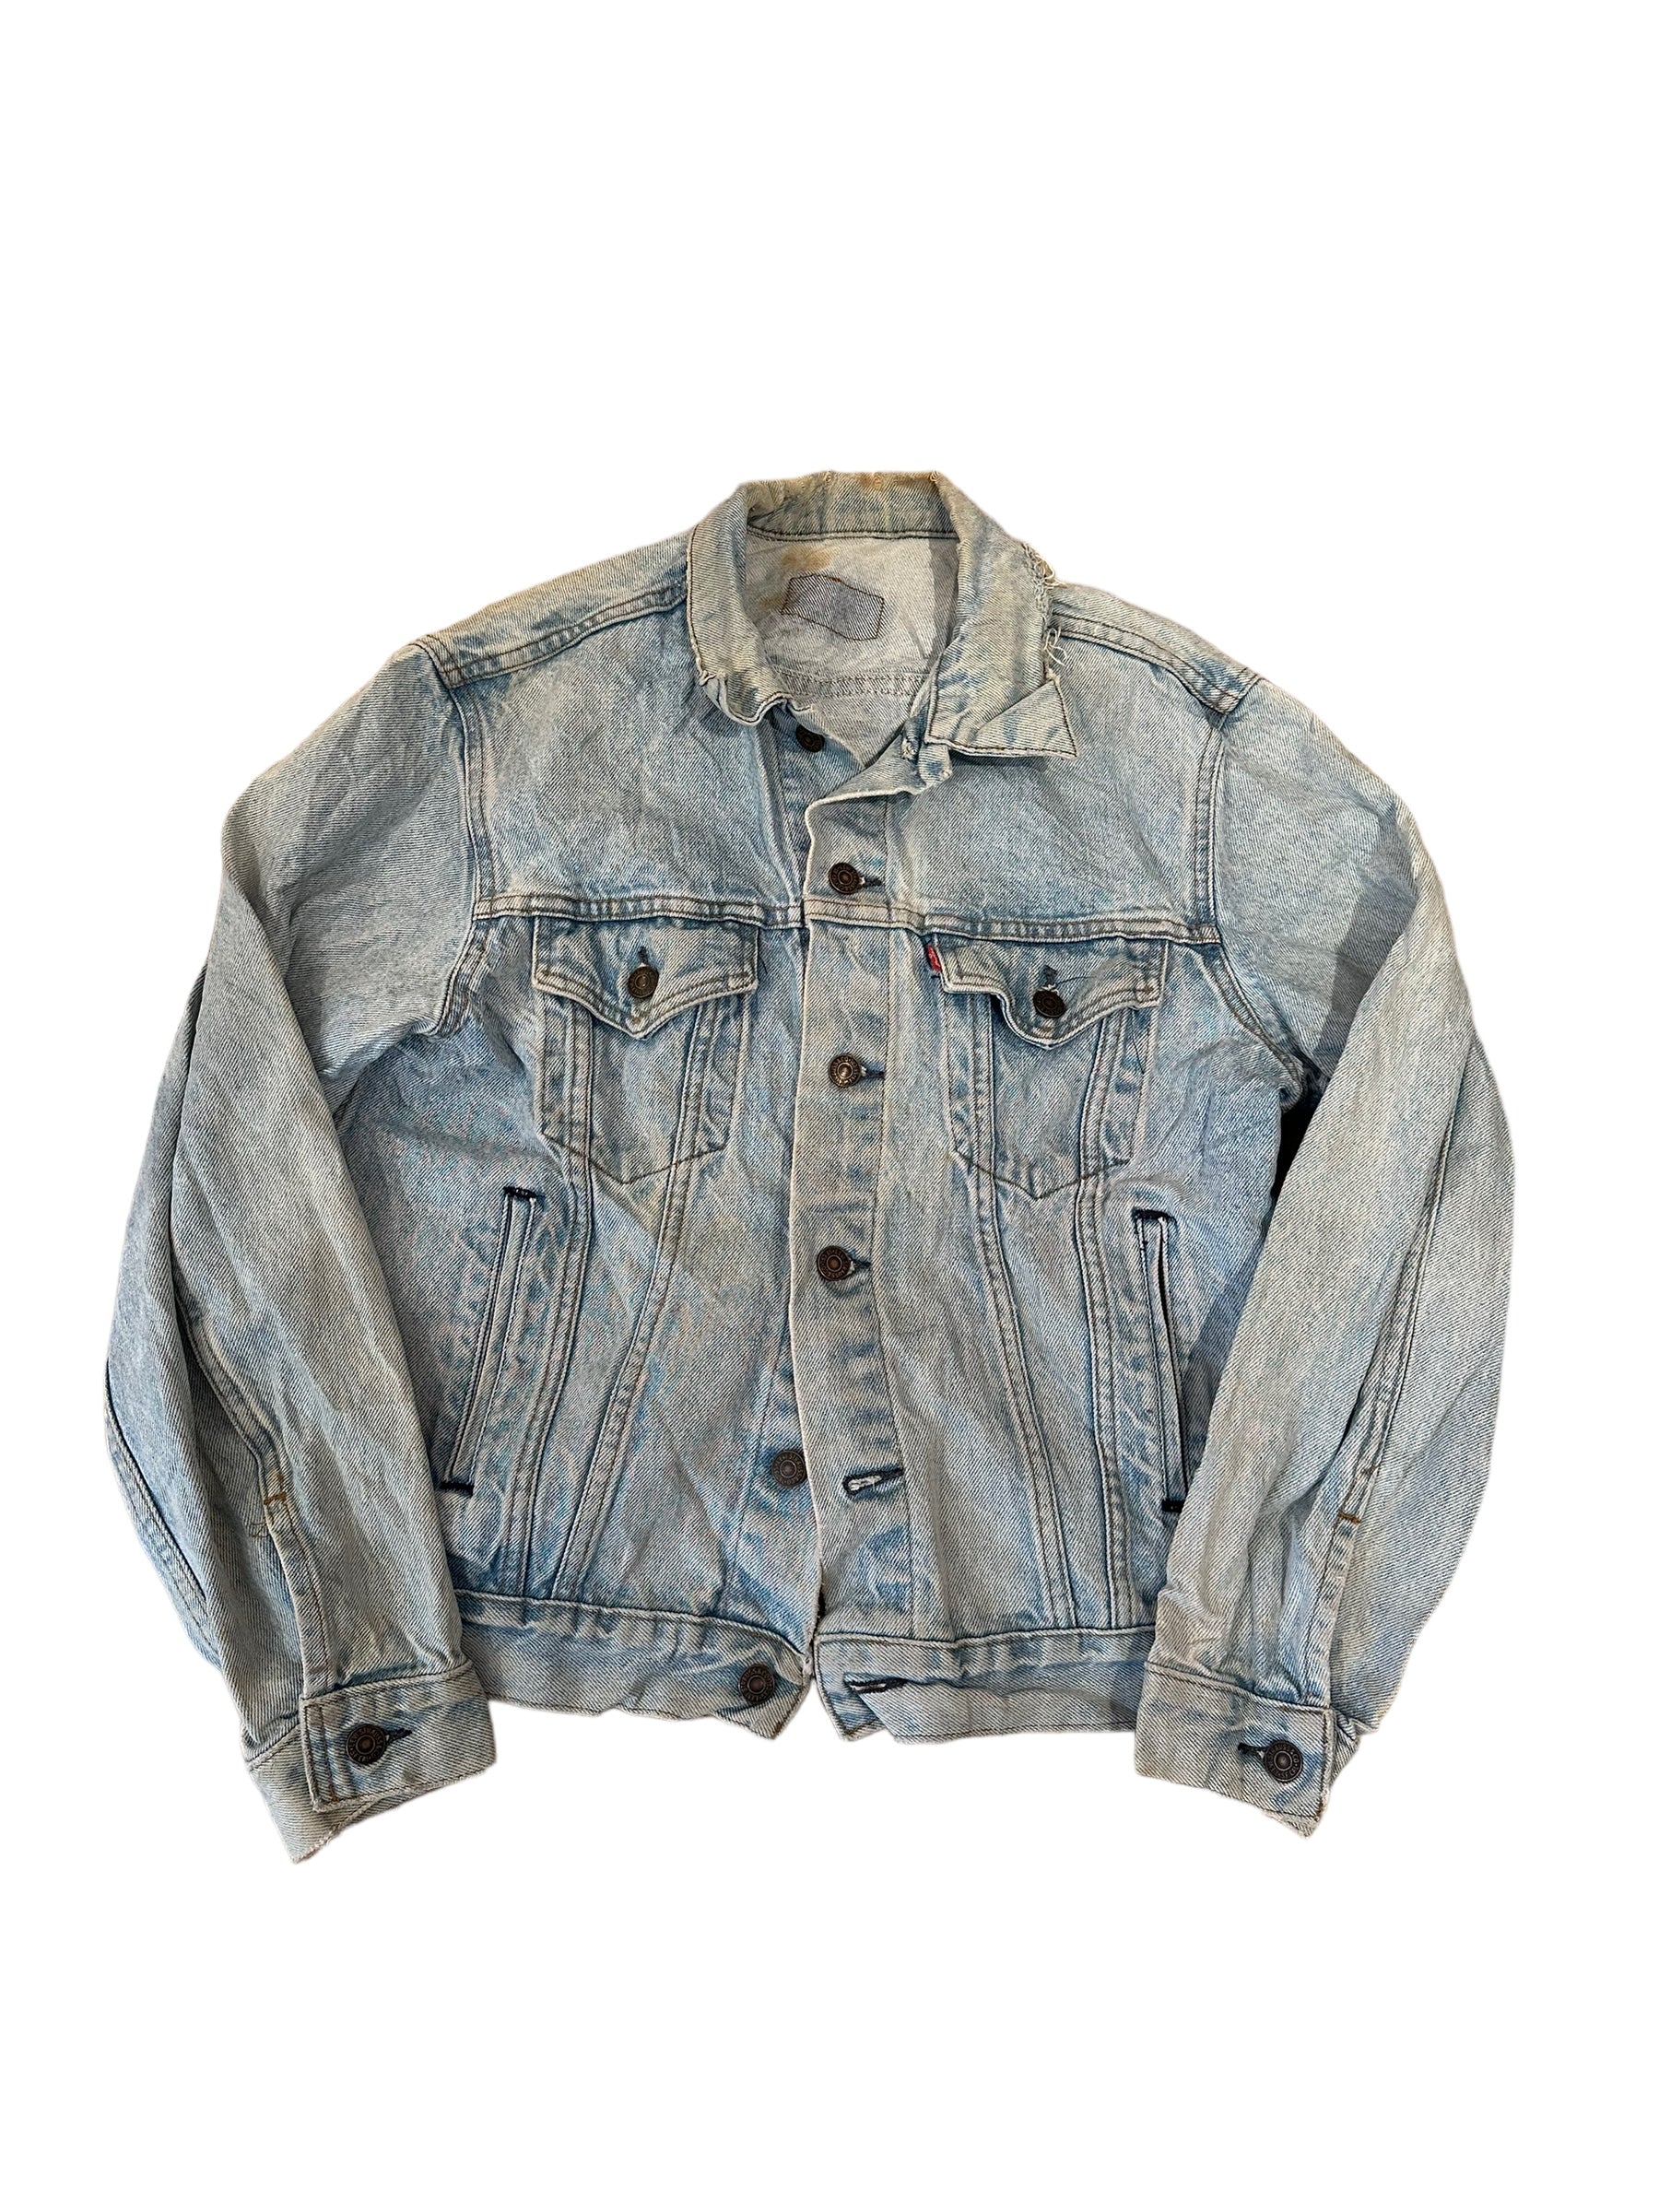 Vintage Levis jacket S/M